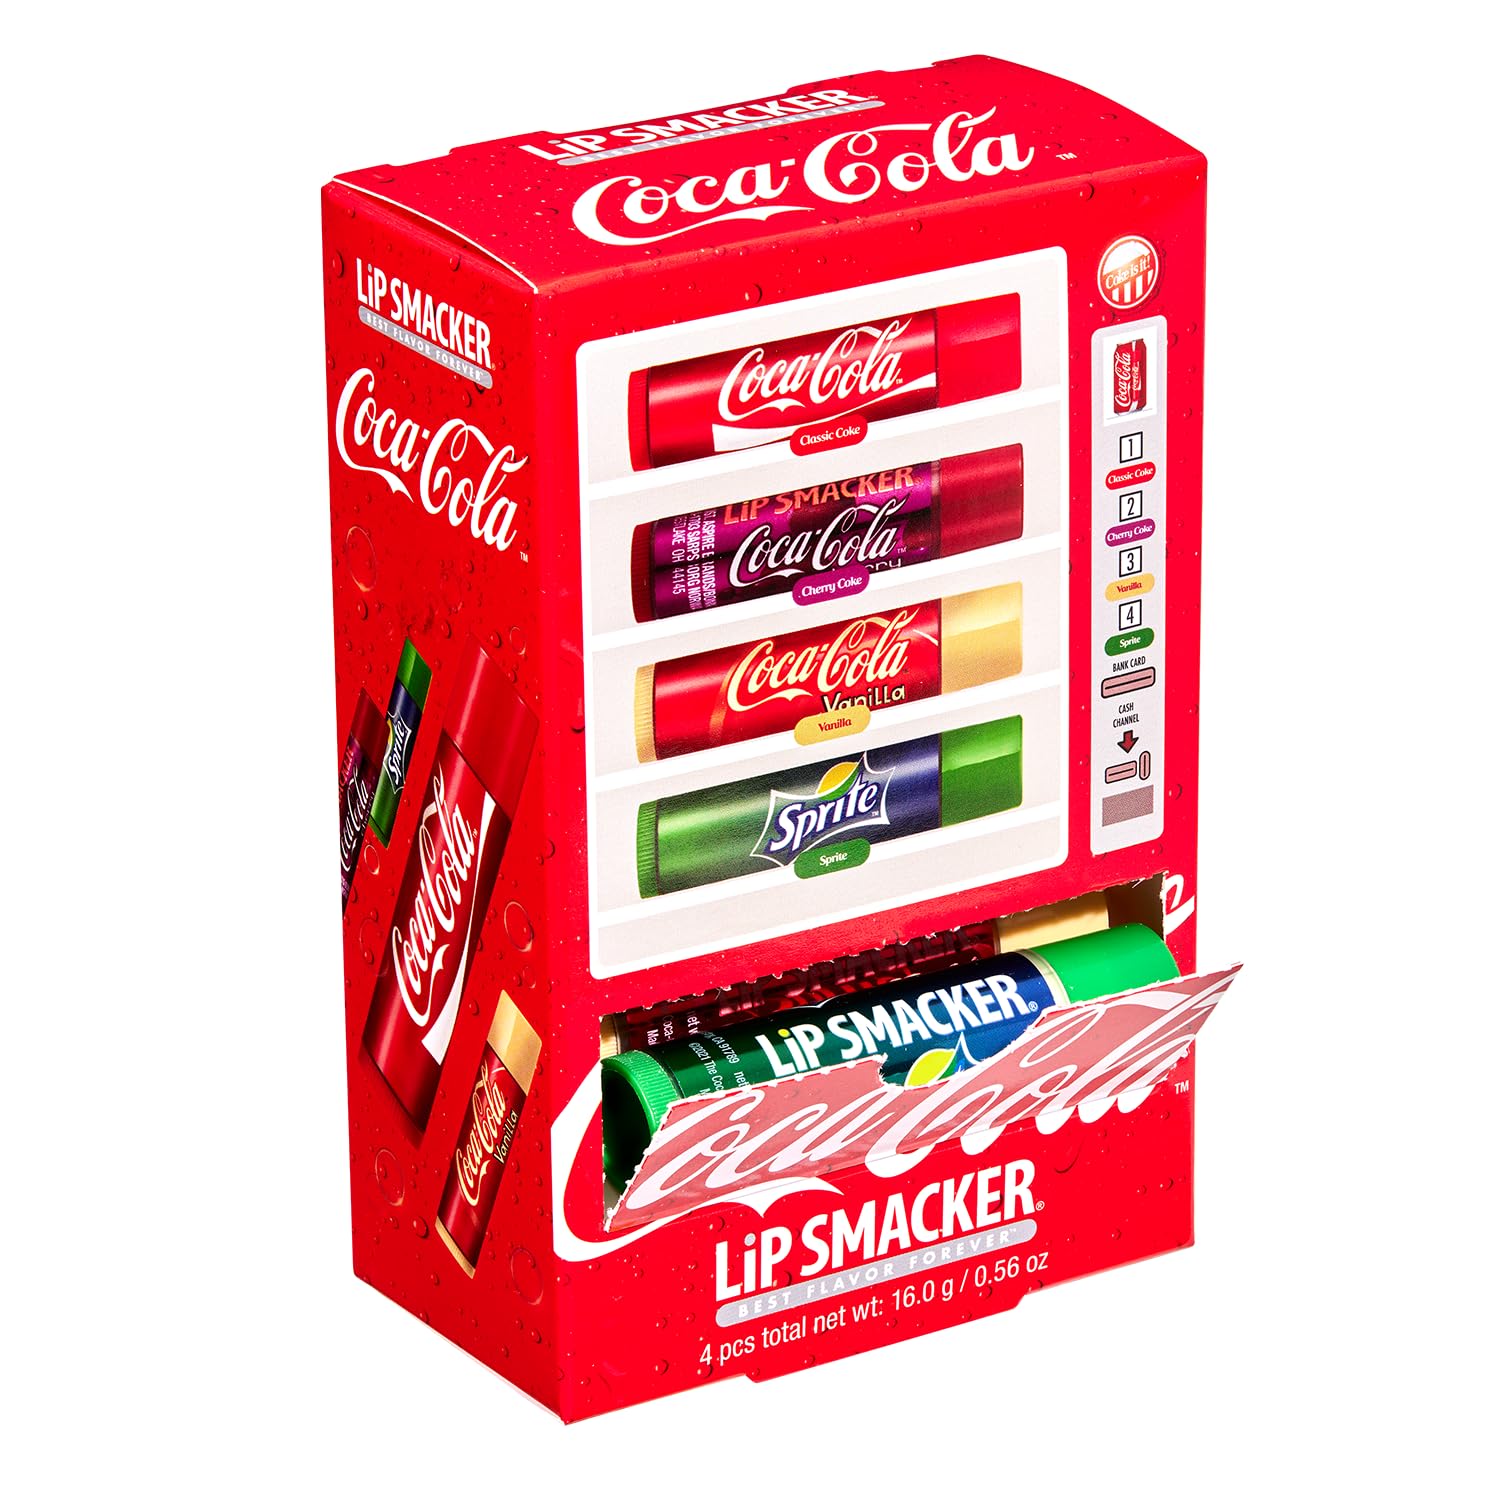 Lip Smacker Coca Cola Collection, lip balm made for kids - Coca Cola Lip Balm Vending Machine